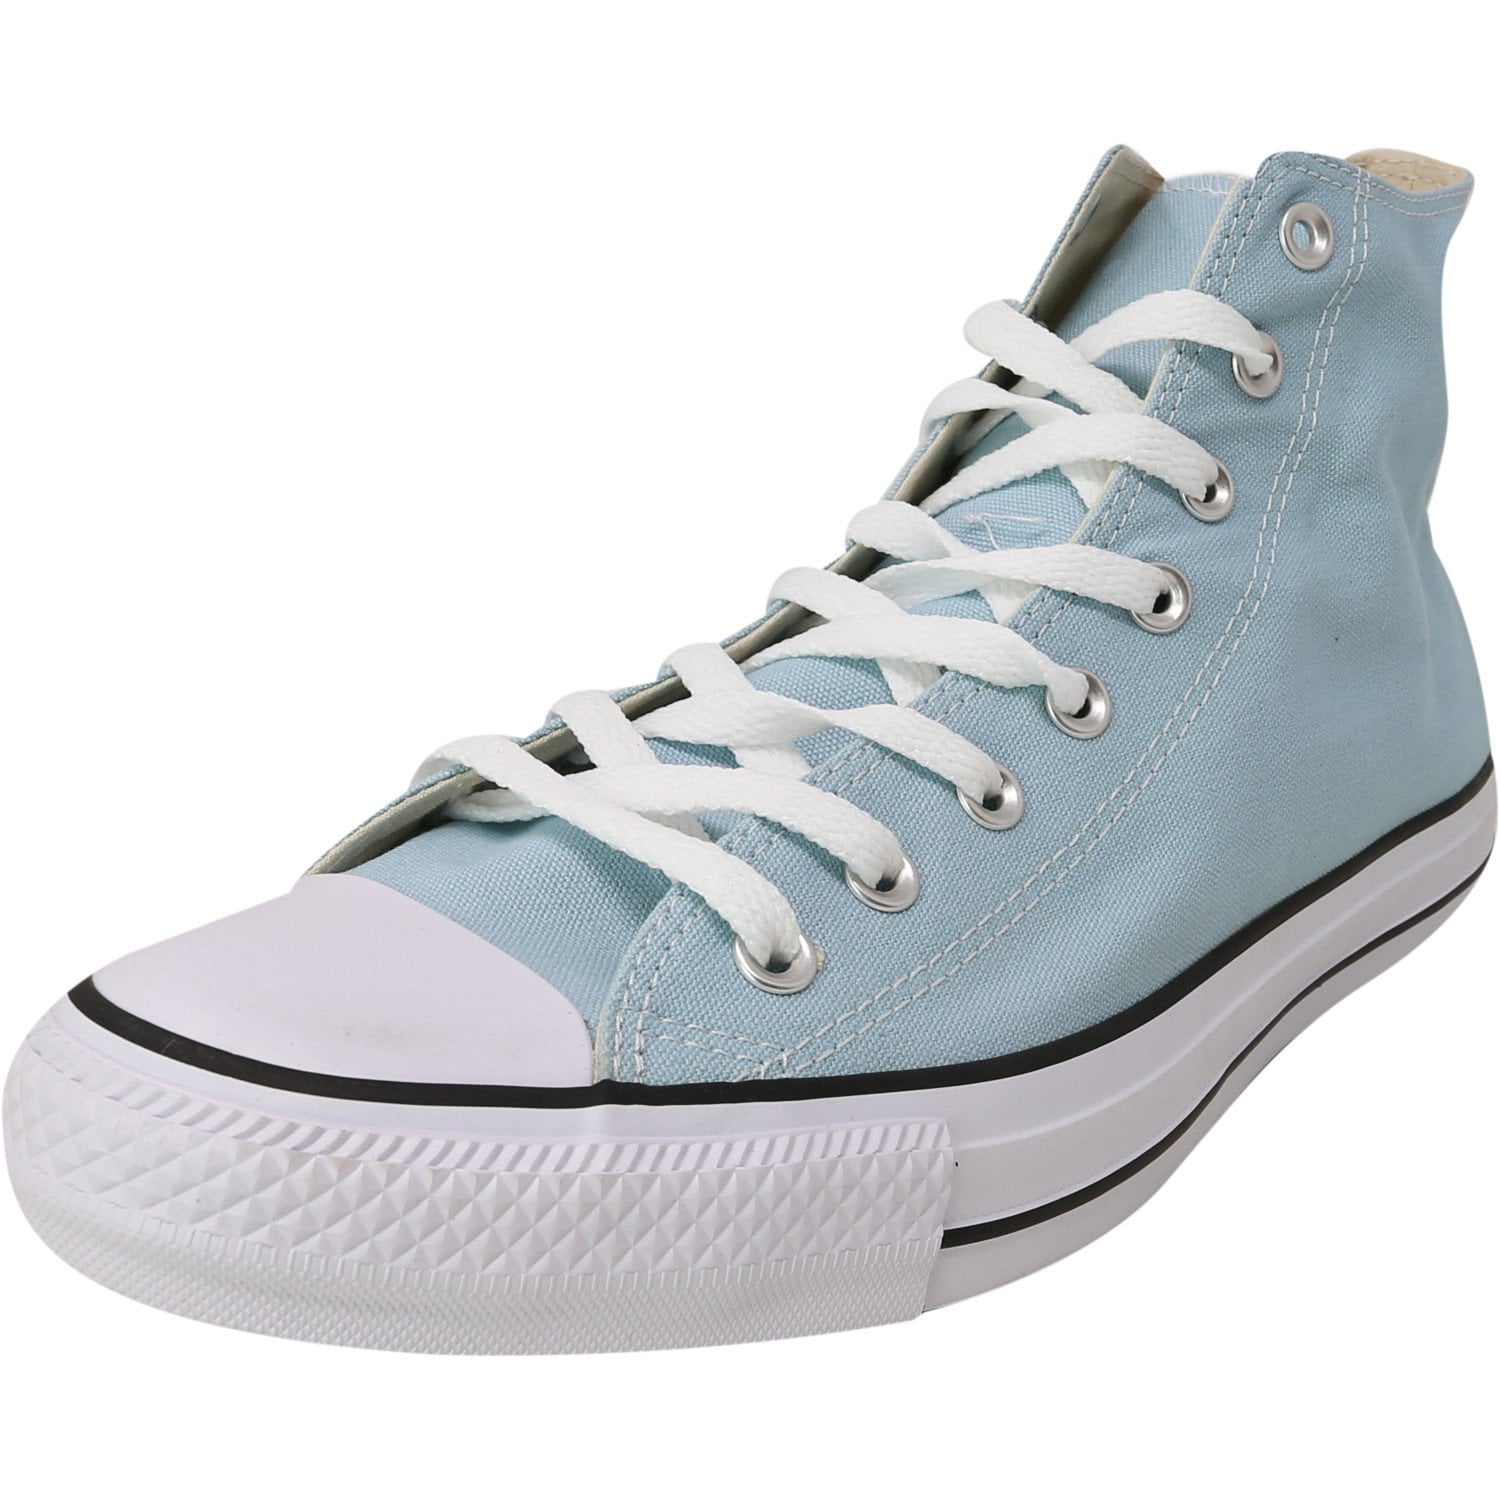 Converse Star Hi Ocean Bliss High-Top Canvas Fashion Sneaker - 14M / - Walmart.com